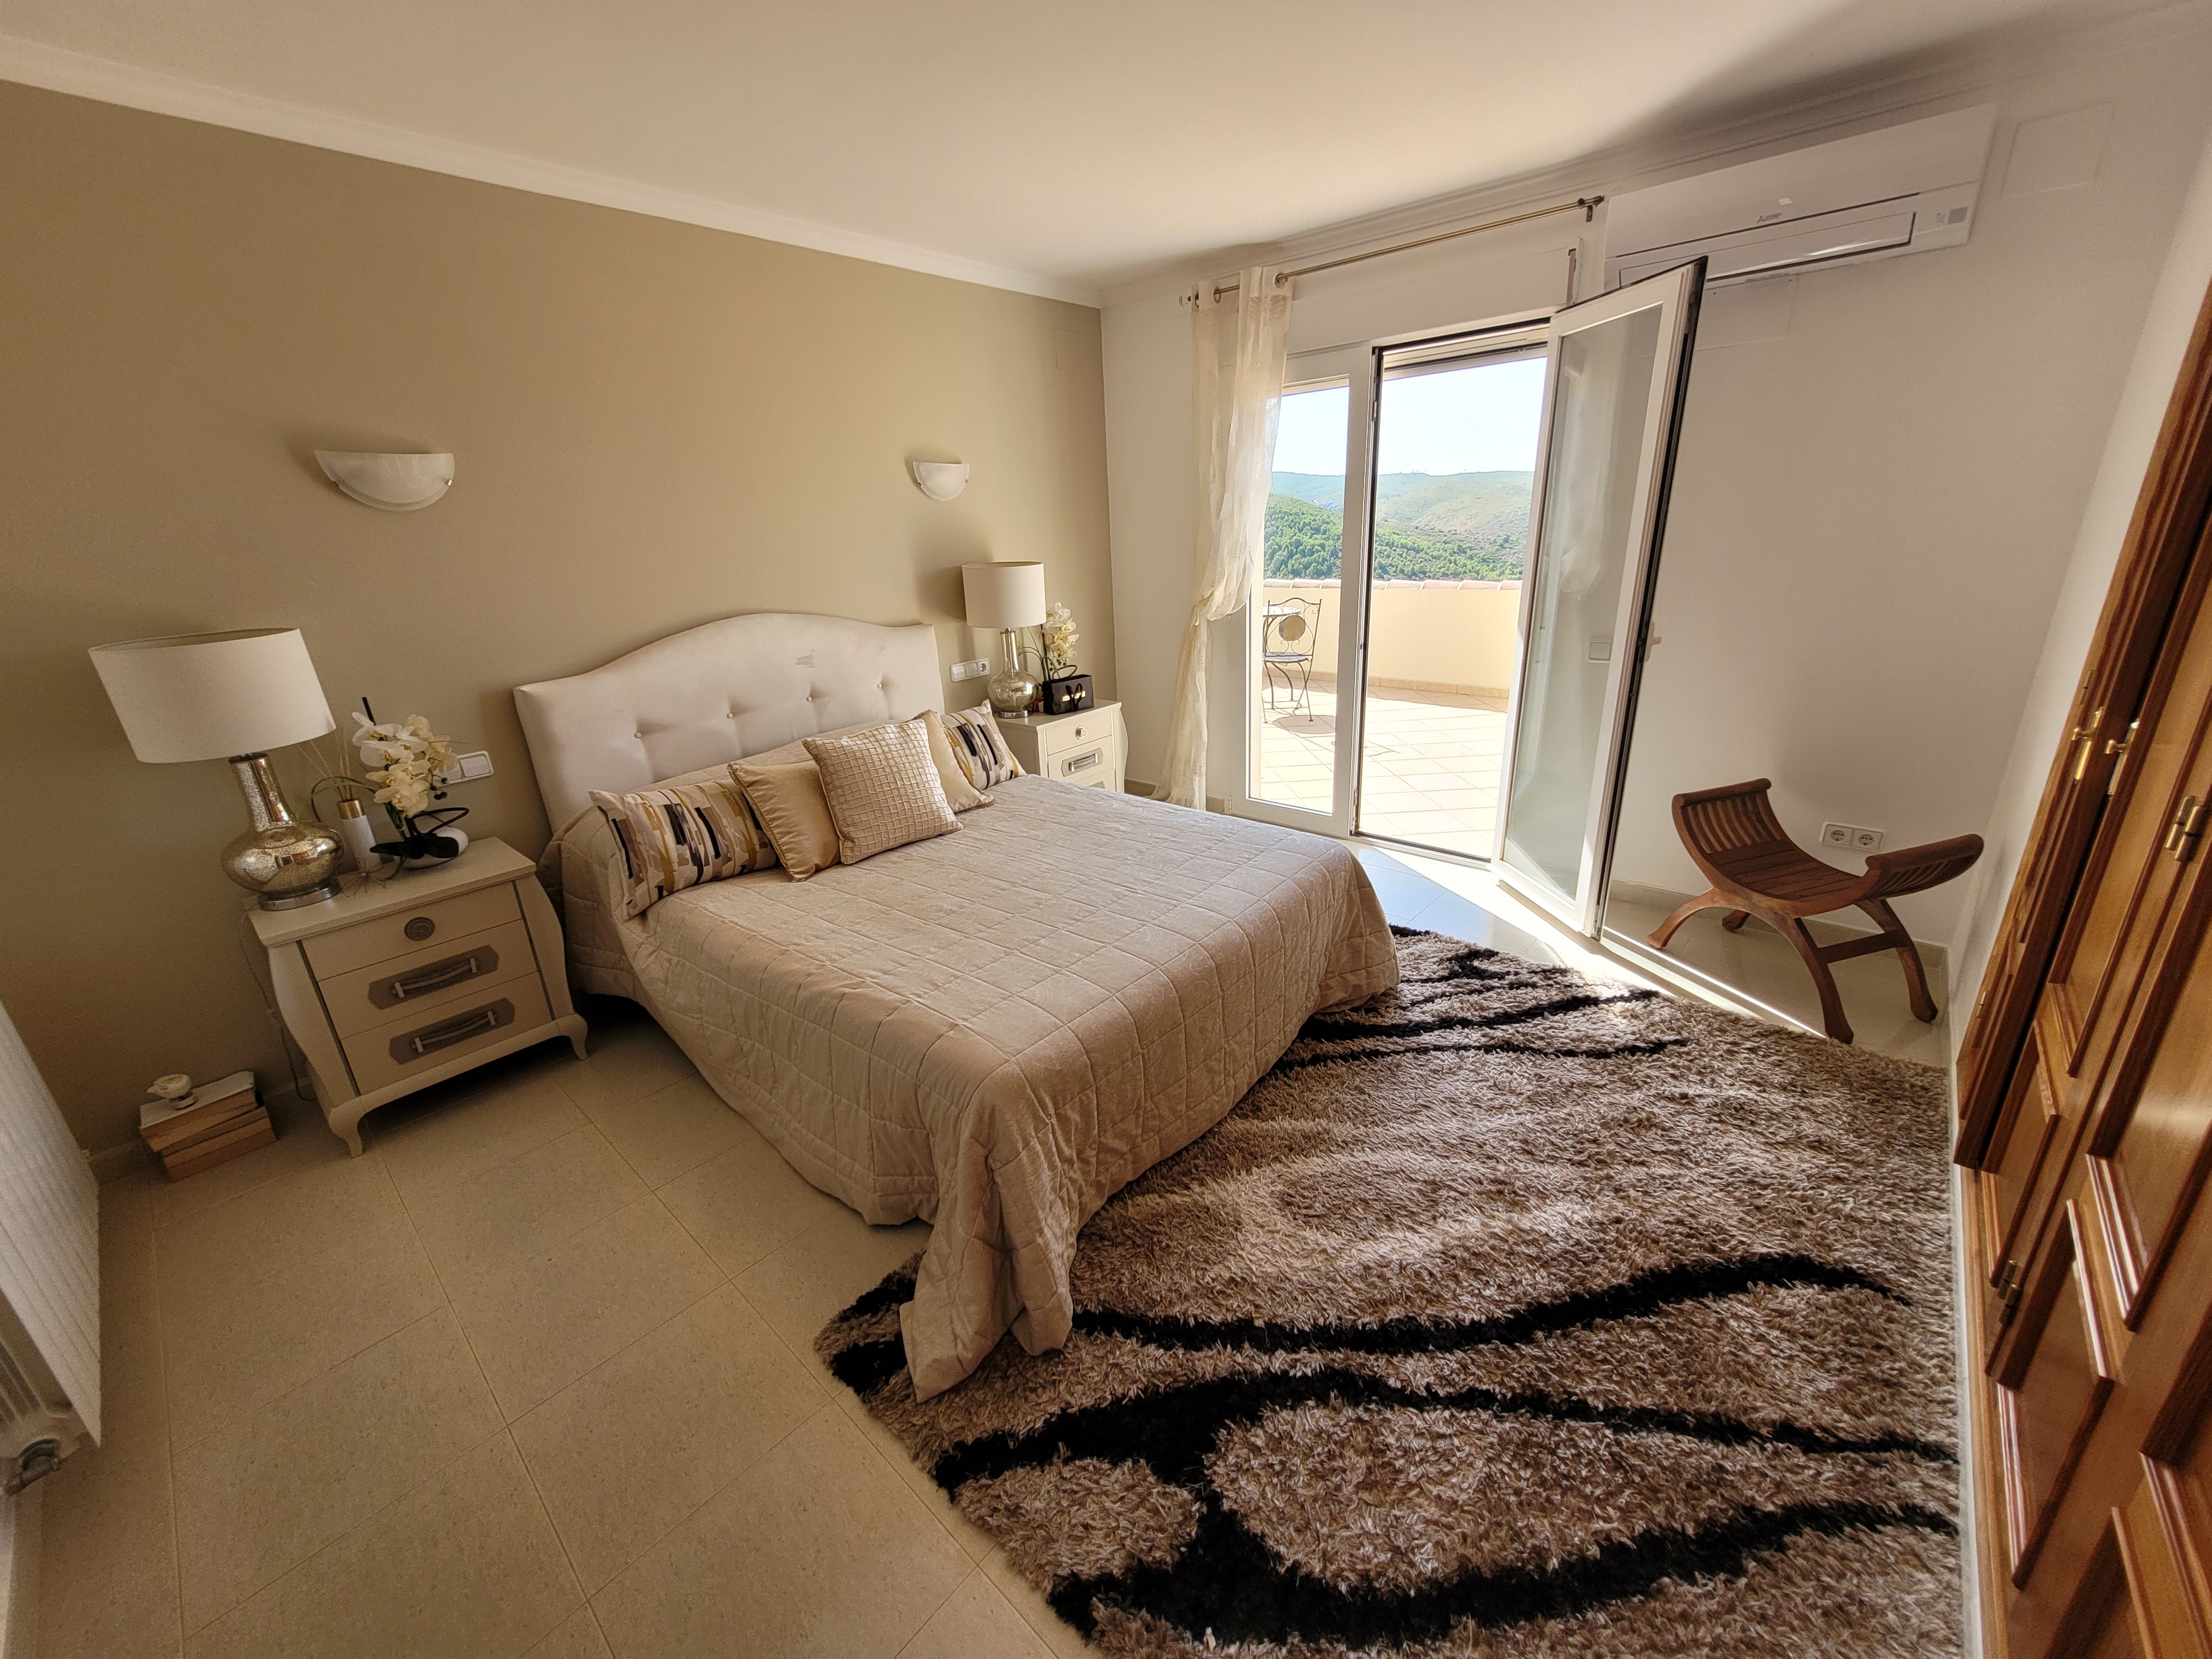 5 Bed villa te koop op Natuurpark Granadella met prachtig uitzicht te koop